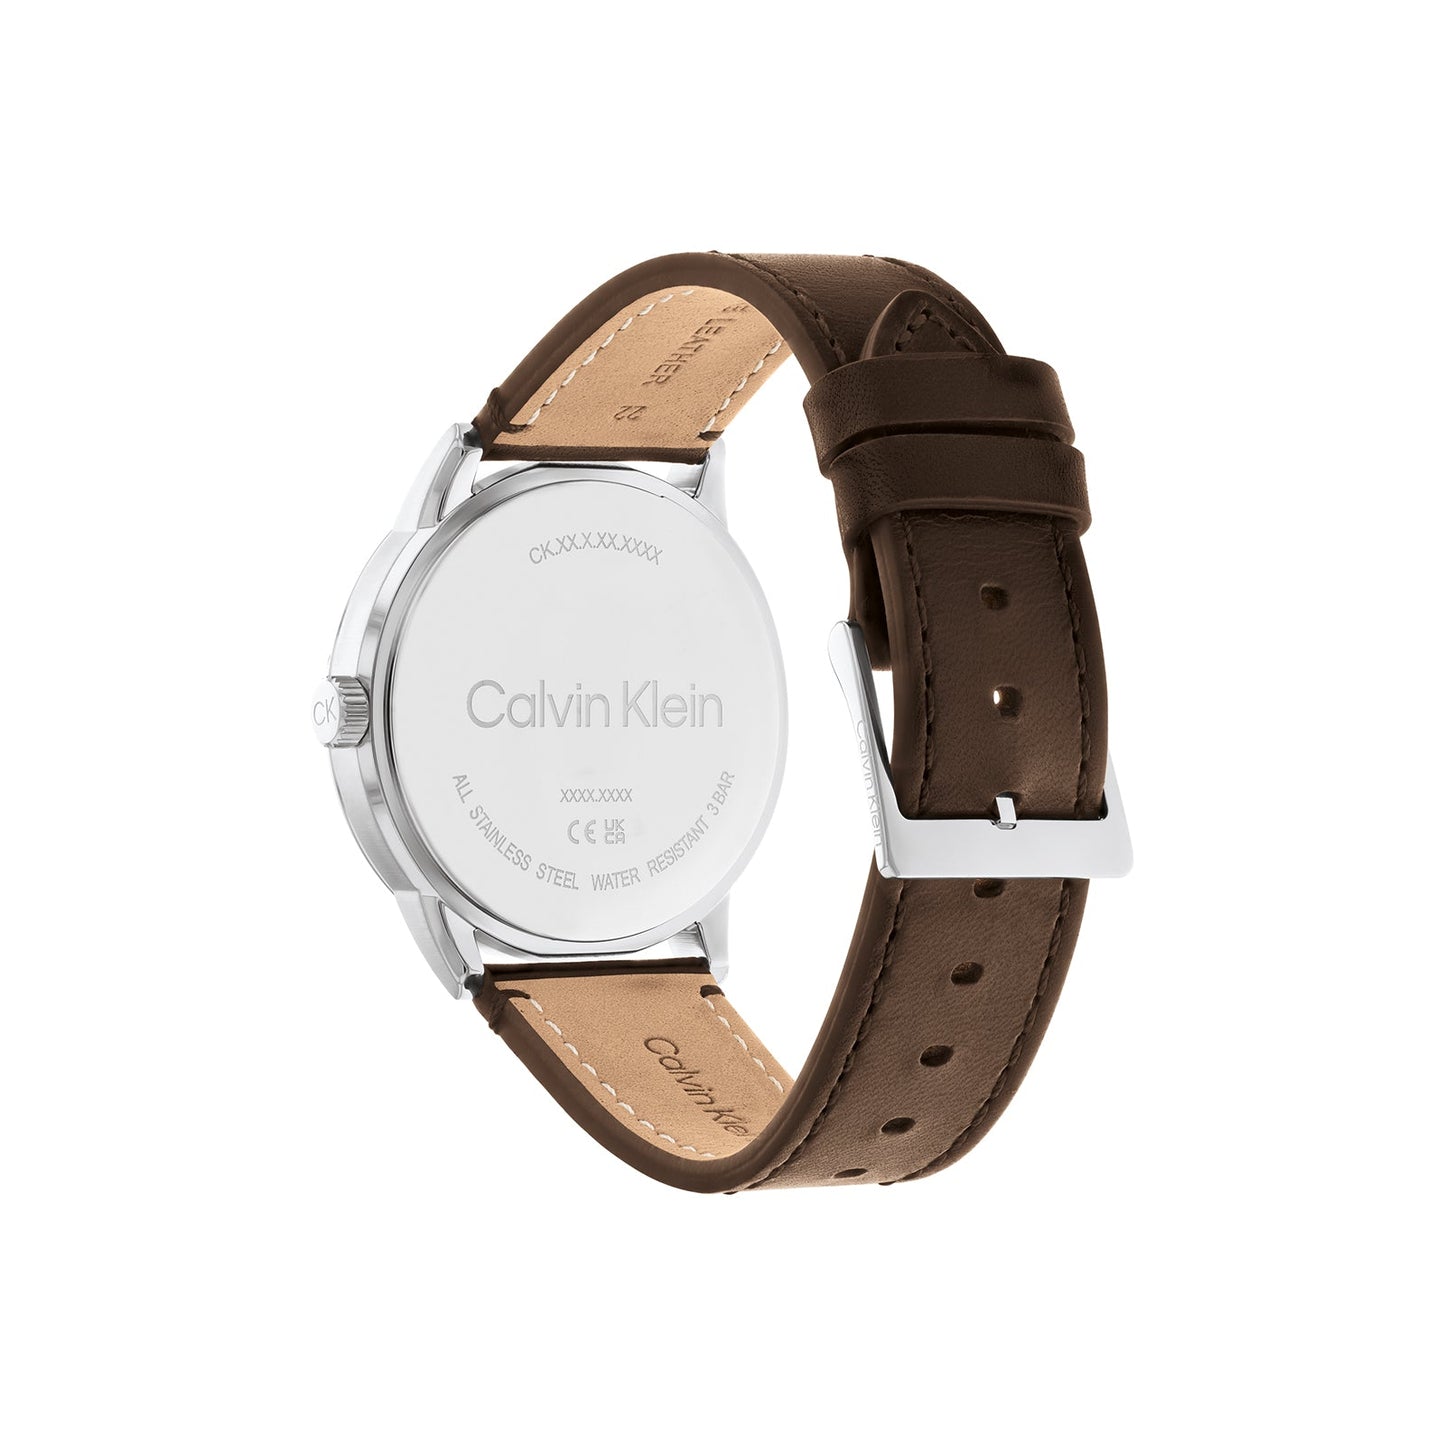 Calvin Klein 25200216 Men's Leather Watch